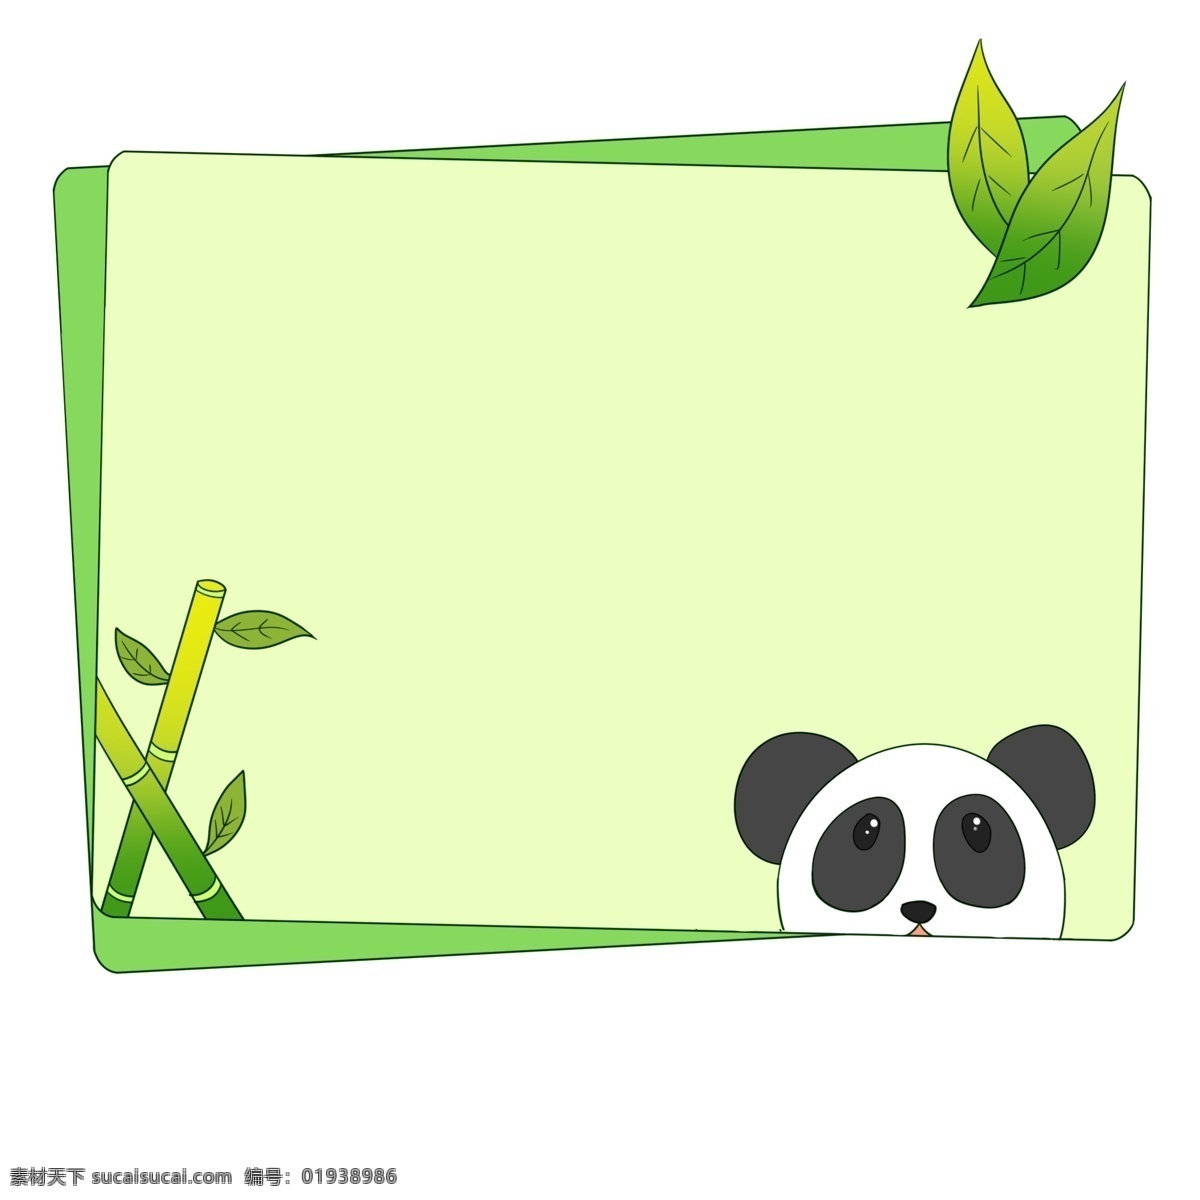 国宝 熊猫 边框 插画 可爱边框熊猫 国宝熊猫装饰 绿色竹子边框 绿色装饰边框 国宝动物边框 小框